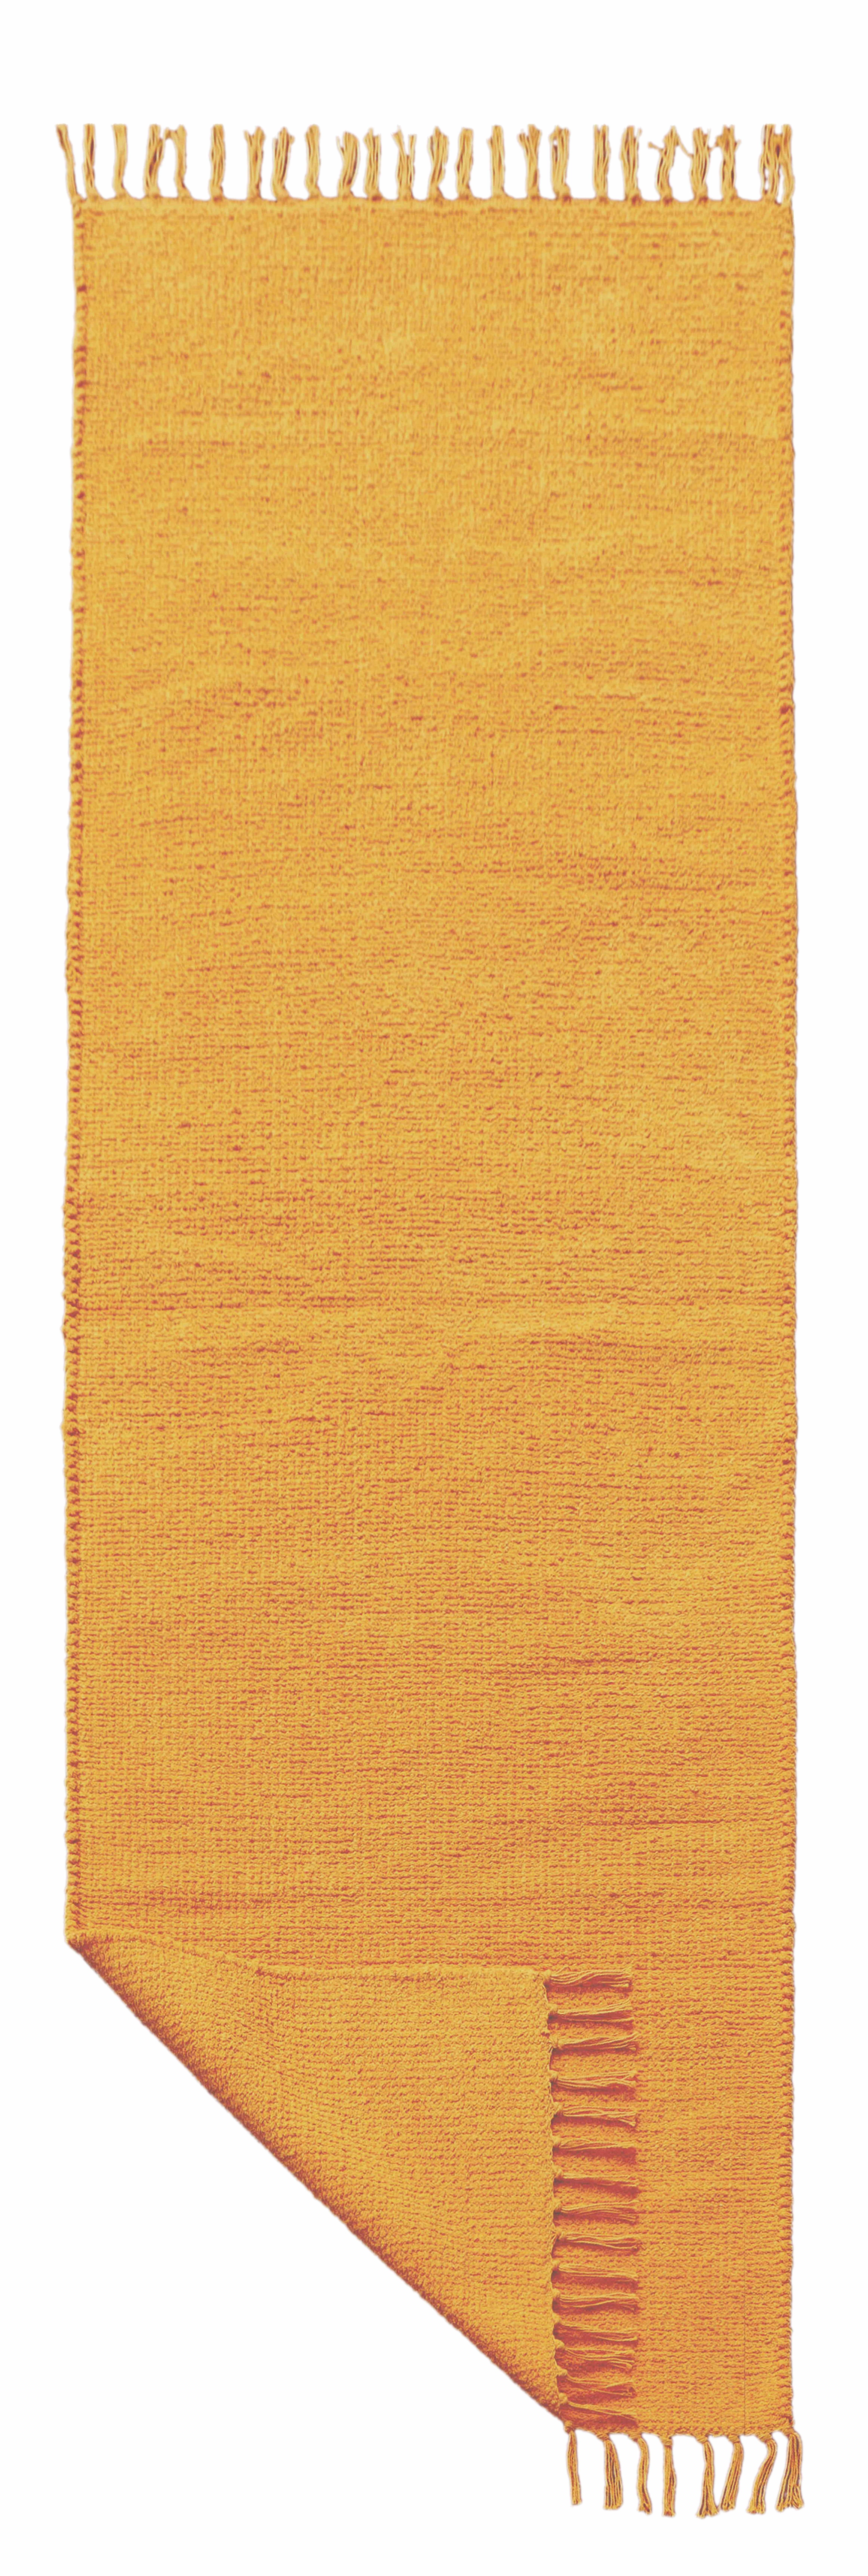 Tappeto giallo in cotone con frange effetto ciniglia 60x200 cm